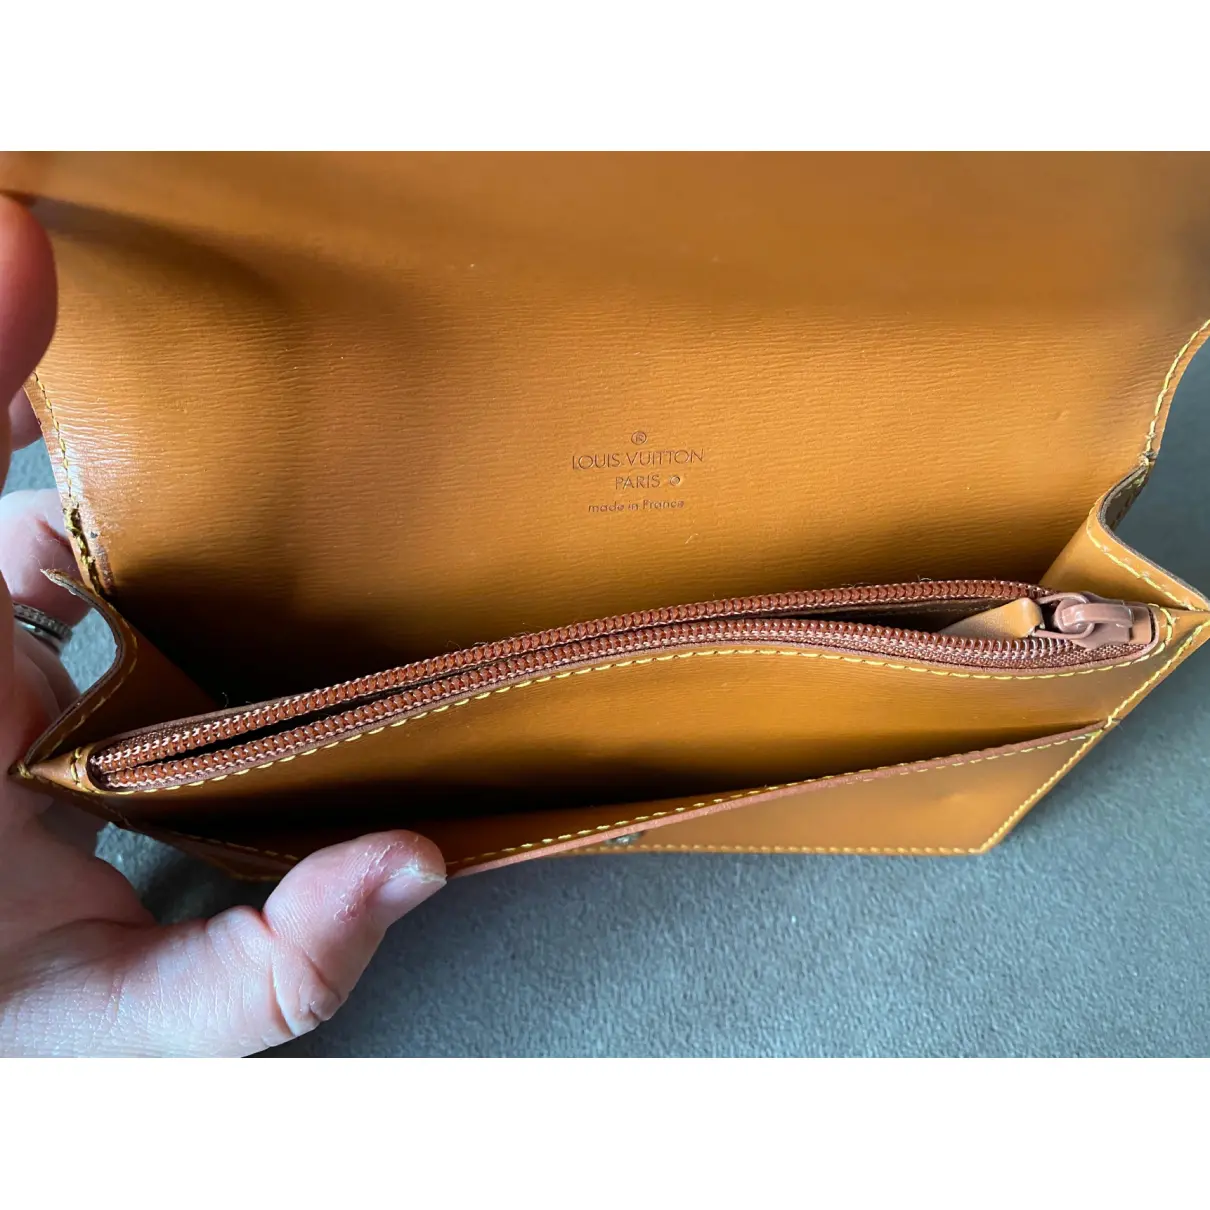 Leather purse Louis Vuitton - Vintage